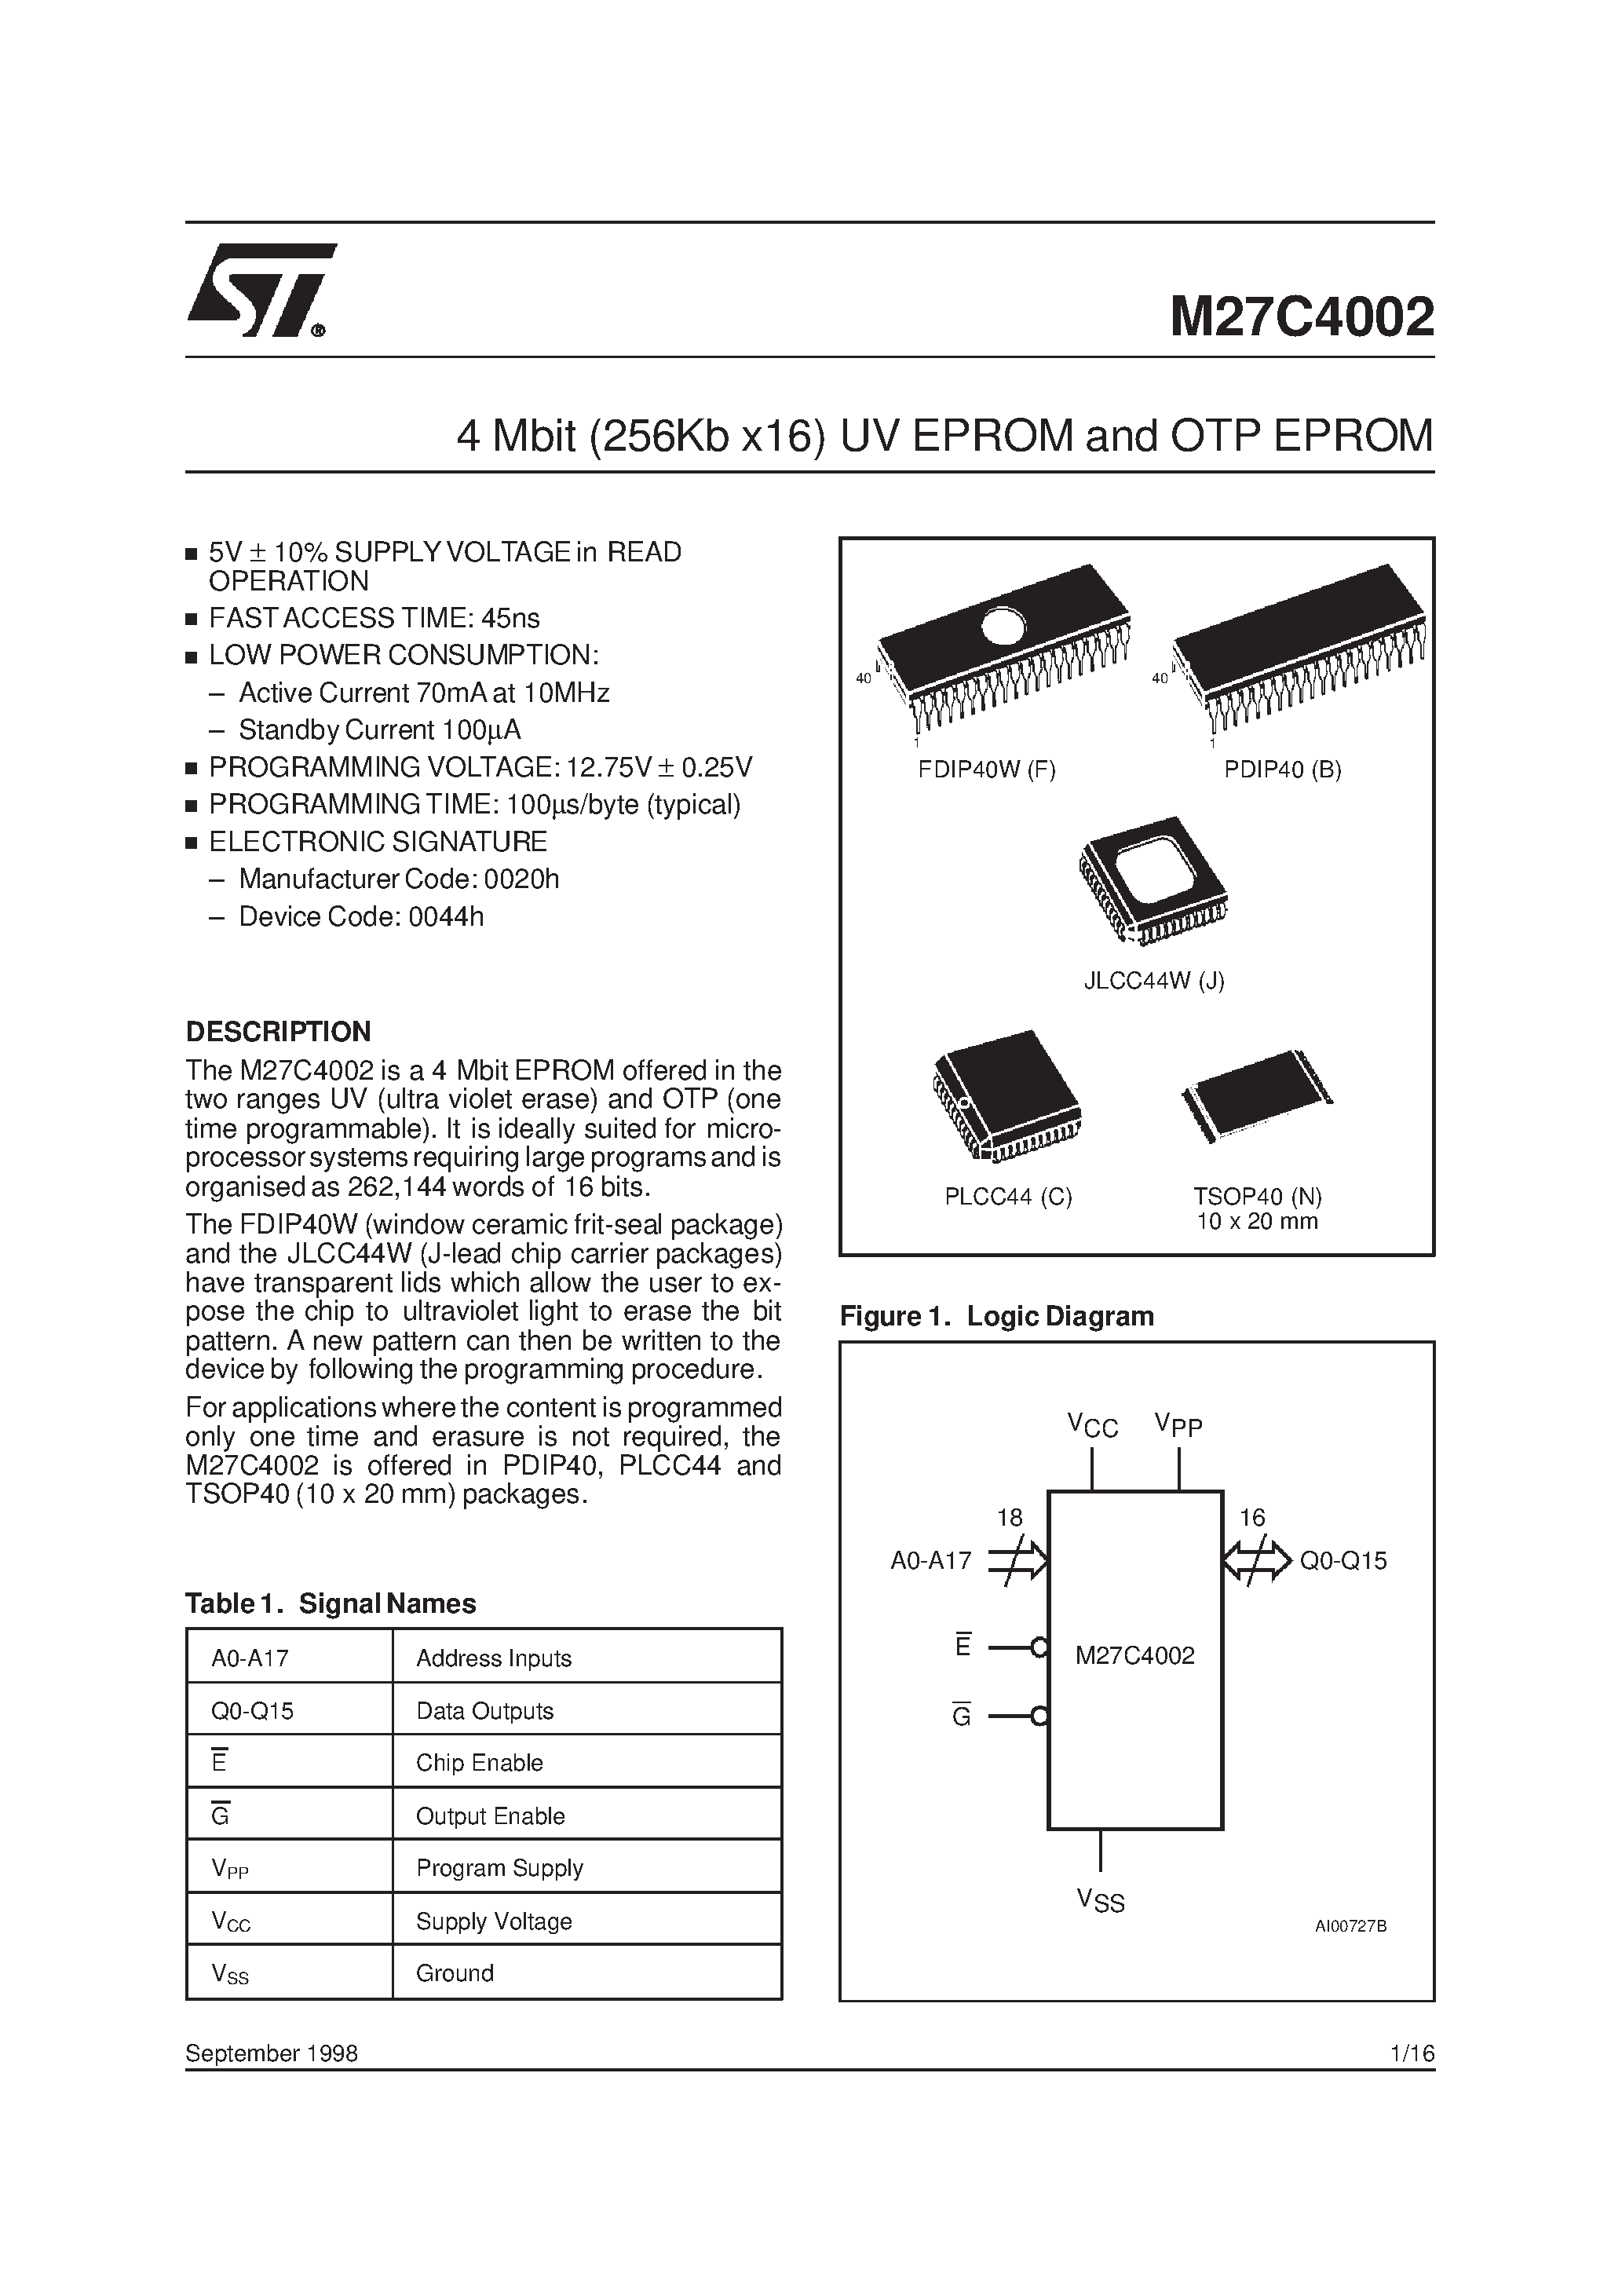 Datasheet M27C4002-10B1X - 4 Mbit 256Kb x16 UV EPROM and OTP EPROM page 1